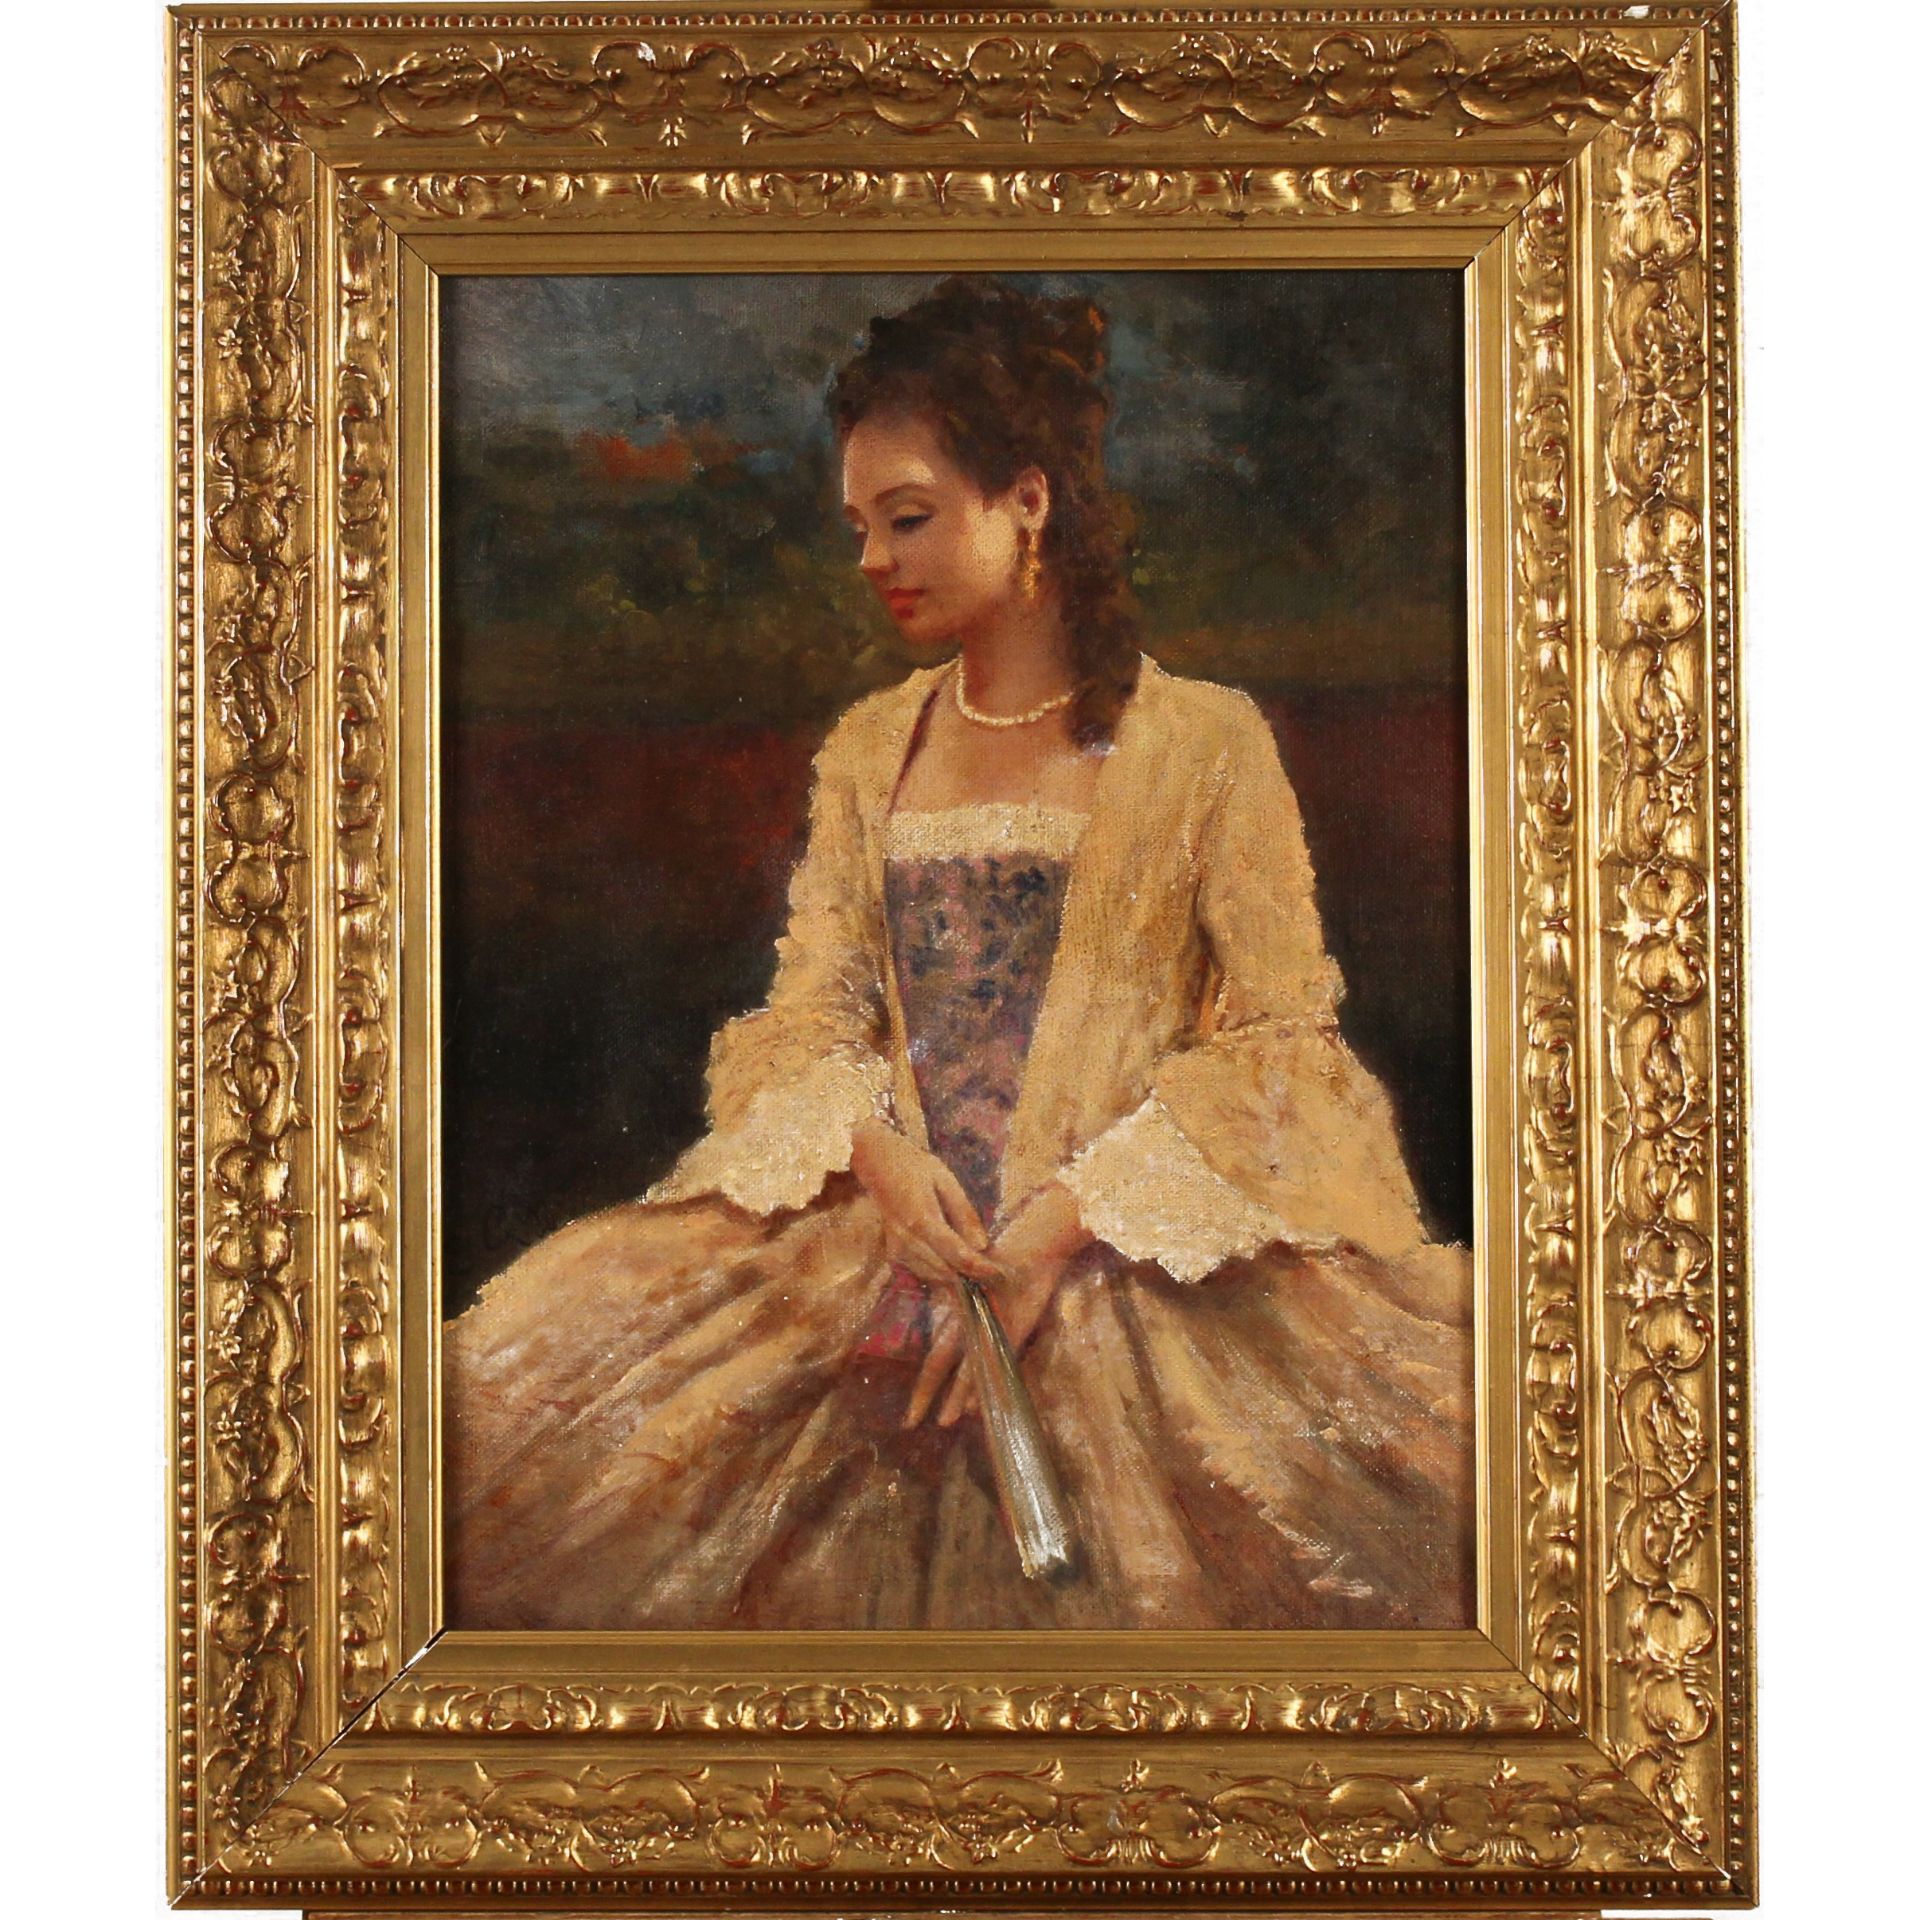 Emilio Rizzi (1881/1952) “Ritratto di nobildonna” - “Portrait of a noblewoman”